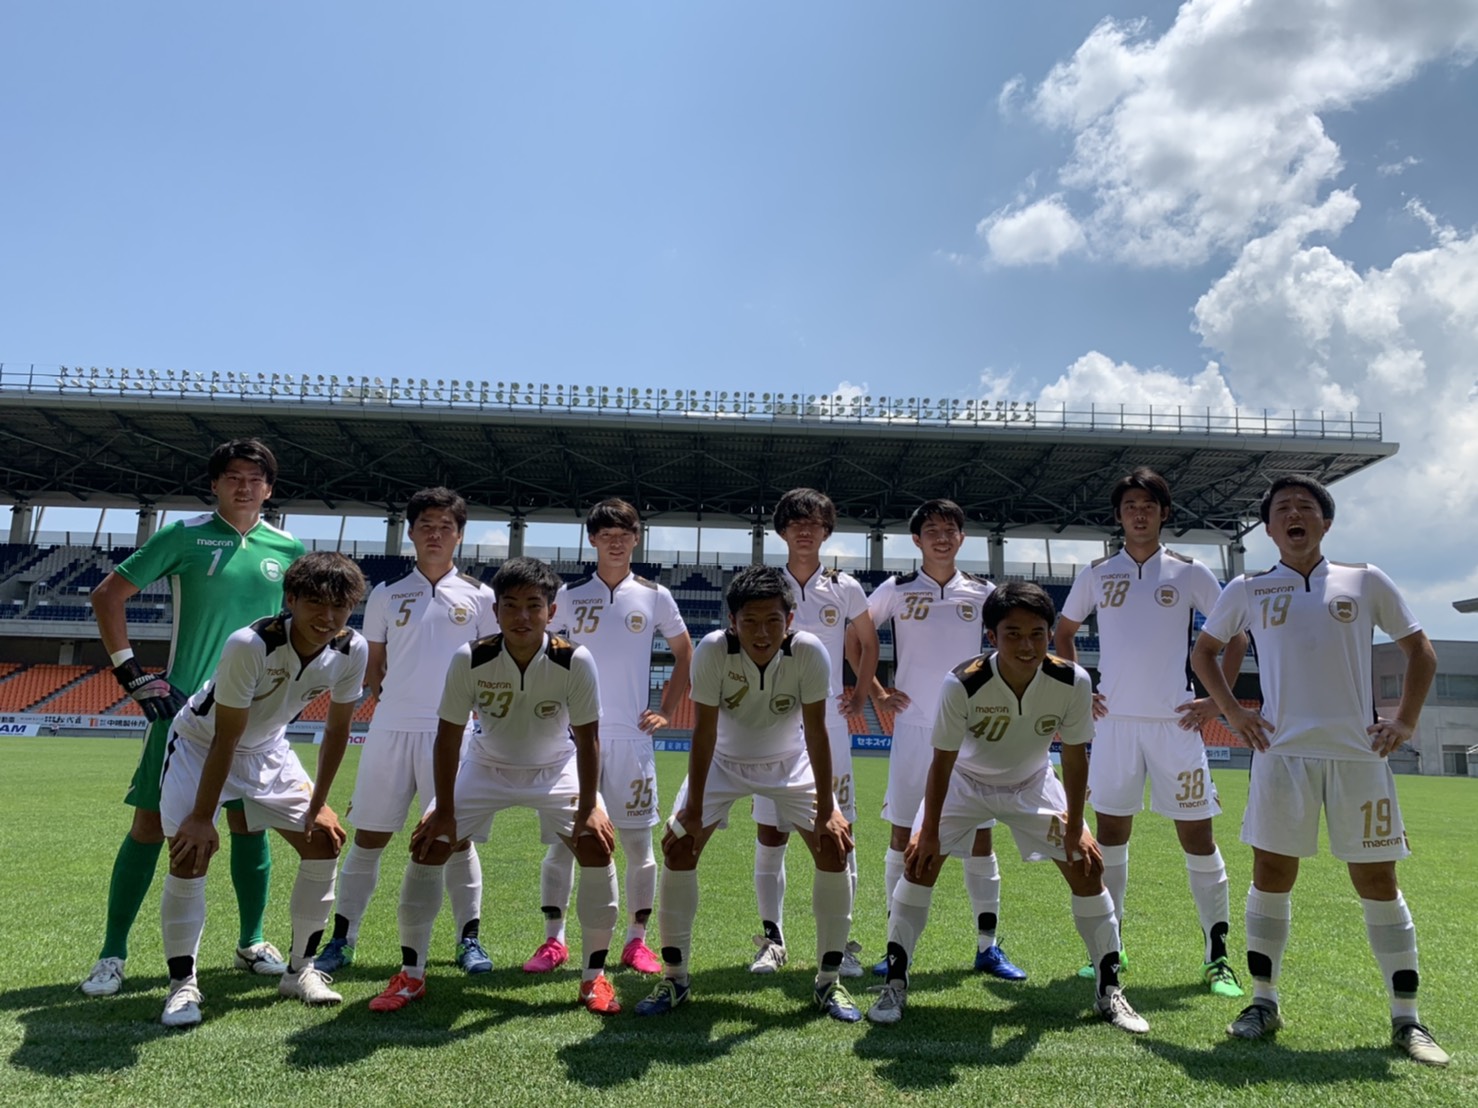 試合日程 結果 松本大学 松本大学サッカー部 公式ホームページ